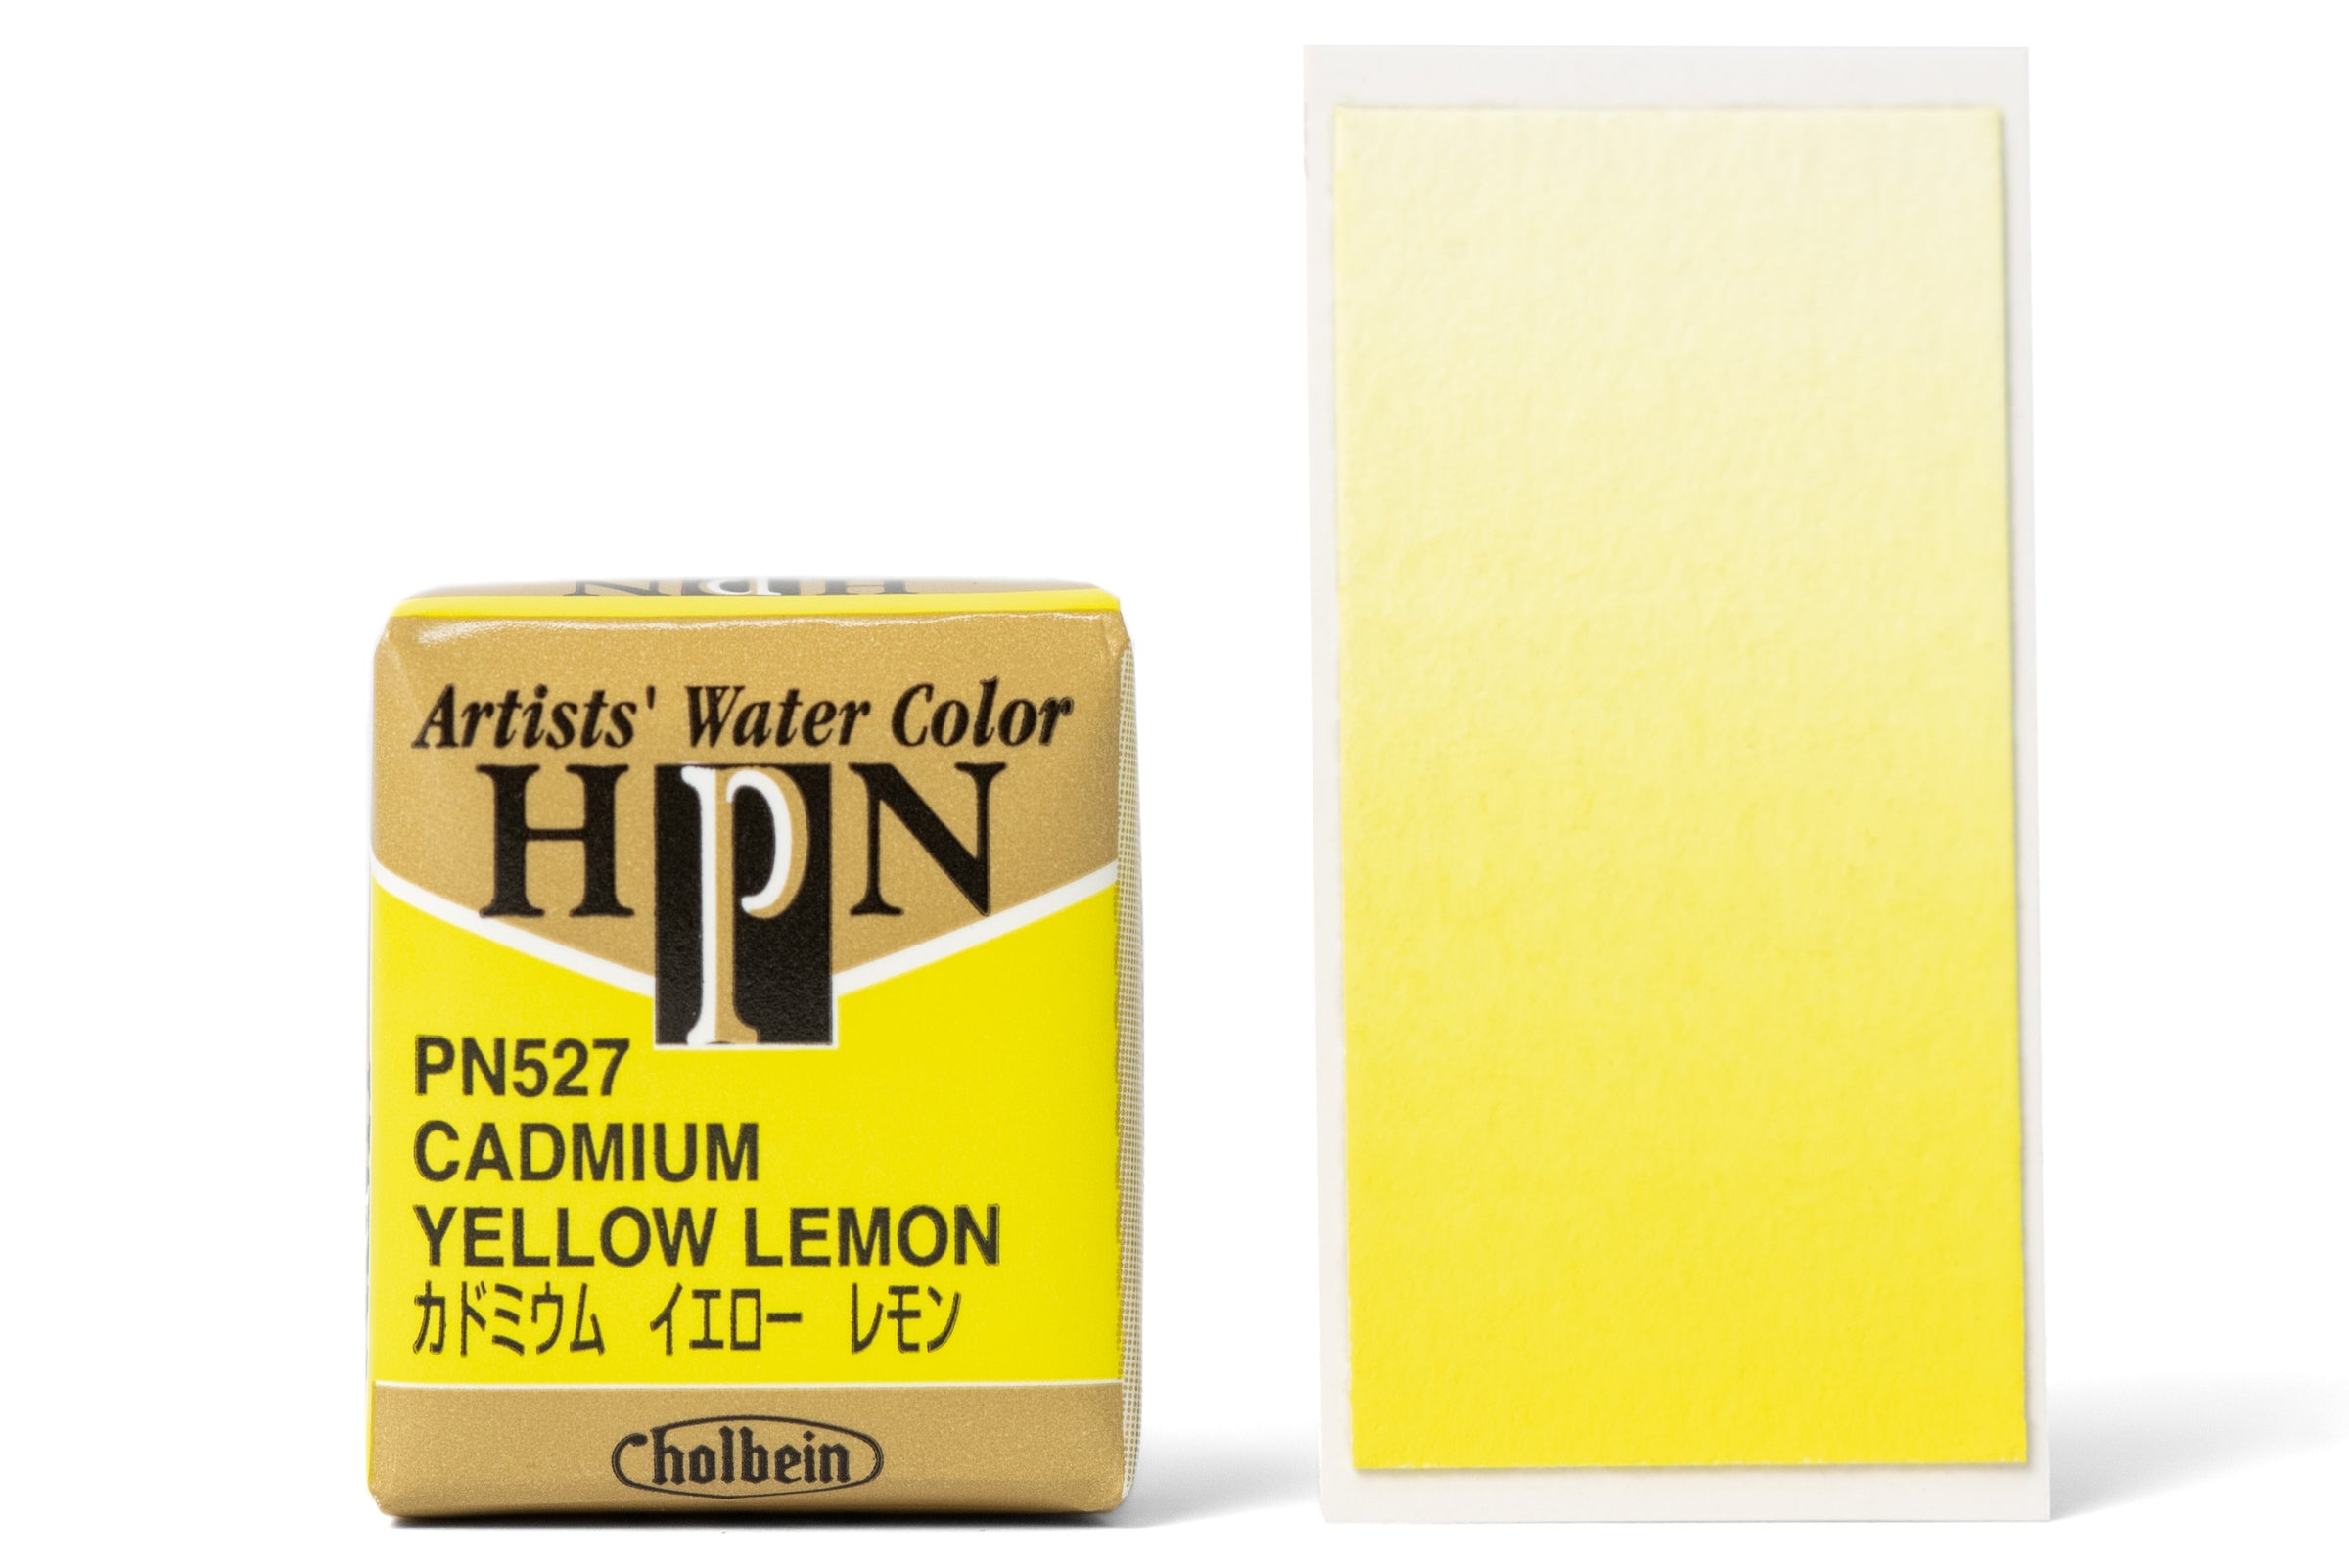 Pentel Art Brush Pen Lemon Yellow - Japanese Product Online Store